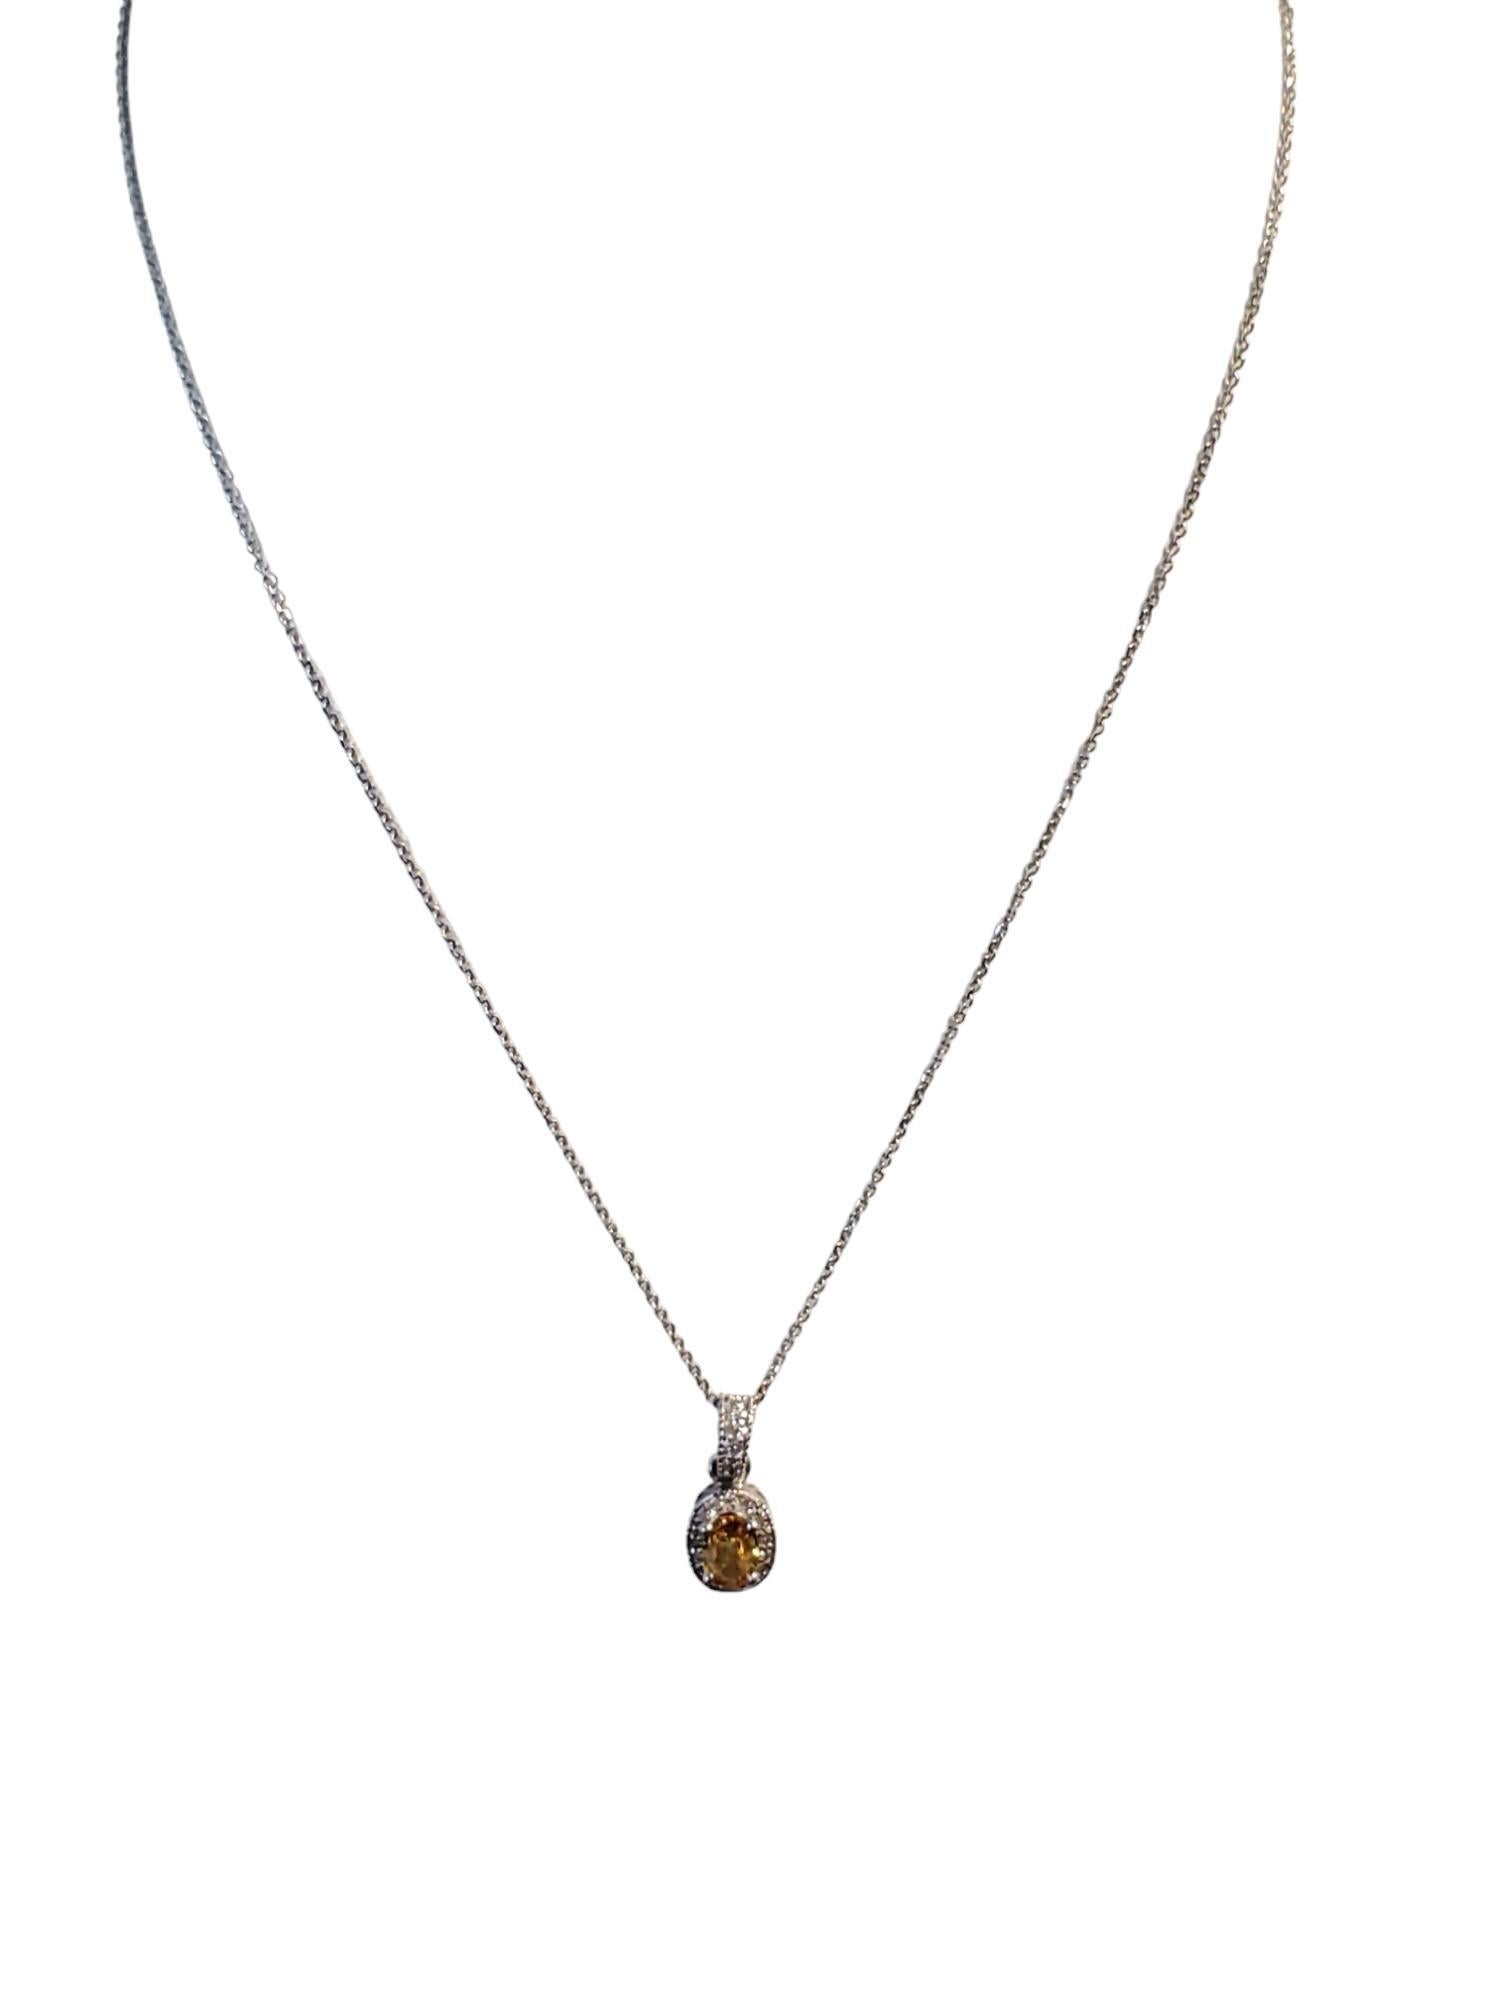 Cette annonce concerne un collier en diamant signé Levian avec des diamants en chocolat de différentes saturations sertis dans de l'or rose 14k. Le collier à chaîne délicat mesure 18